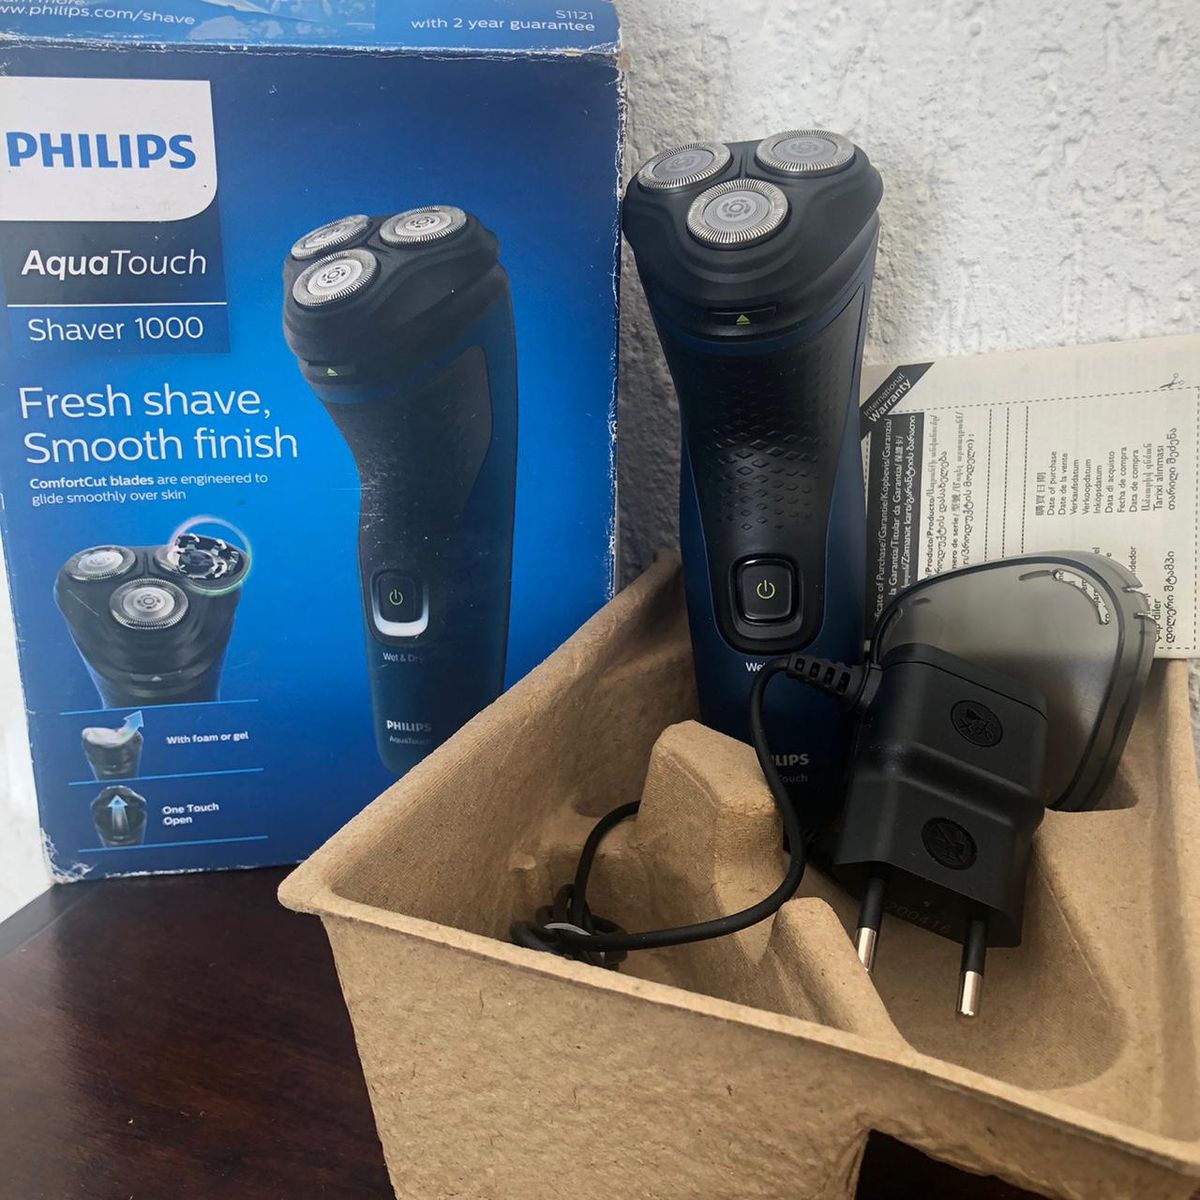 Philips Aqua Touch Shaver 1000 Barbeador Elétrico Produto Masculino Philips Nunca Usado